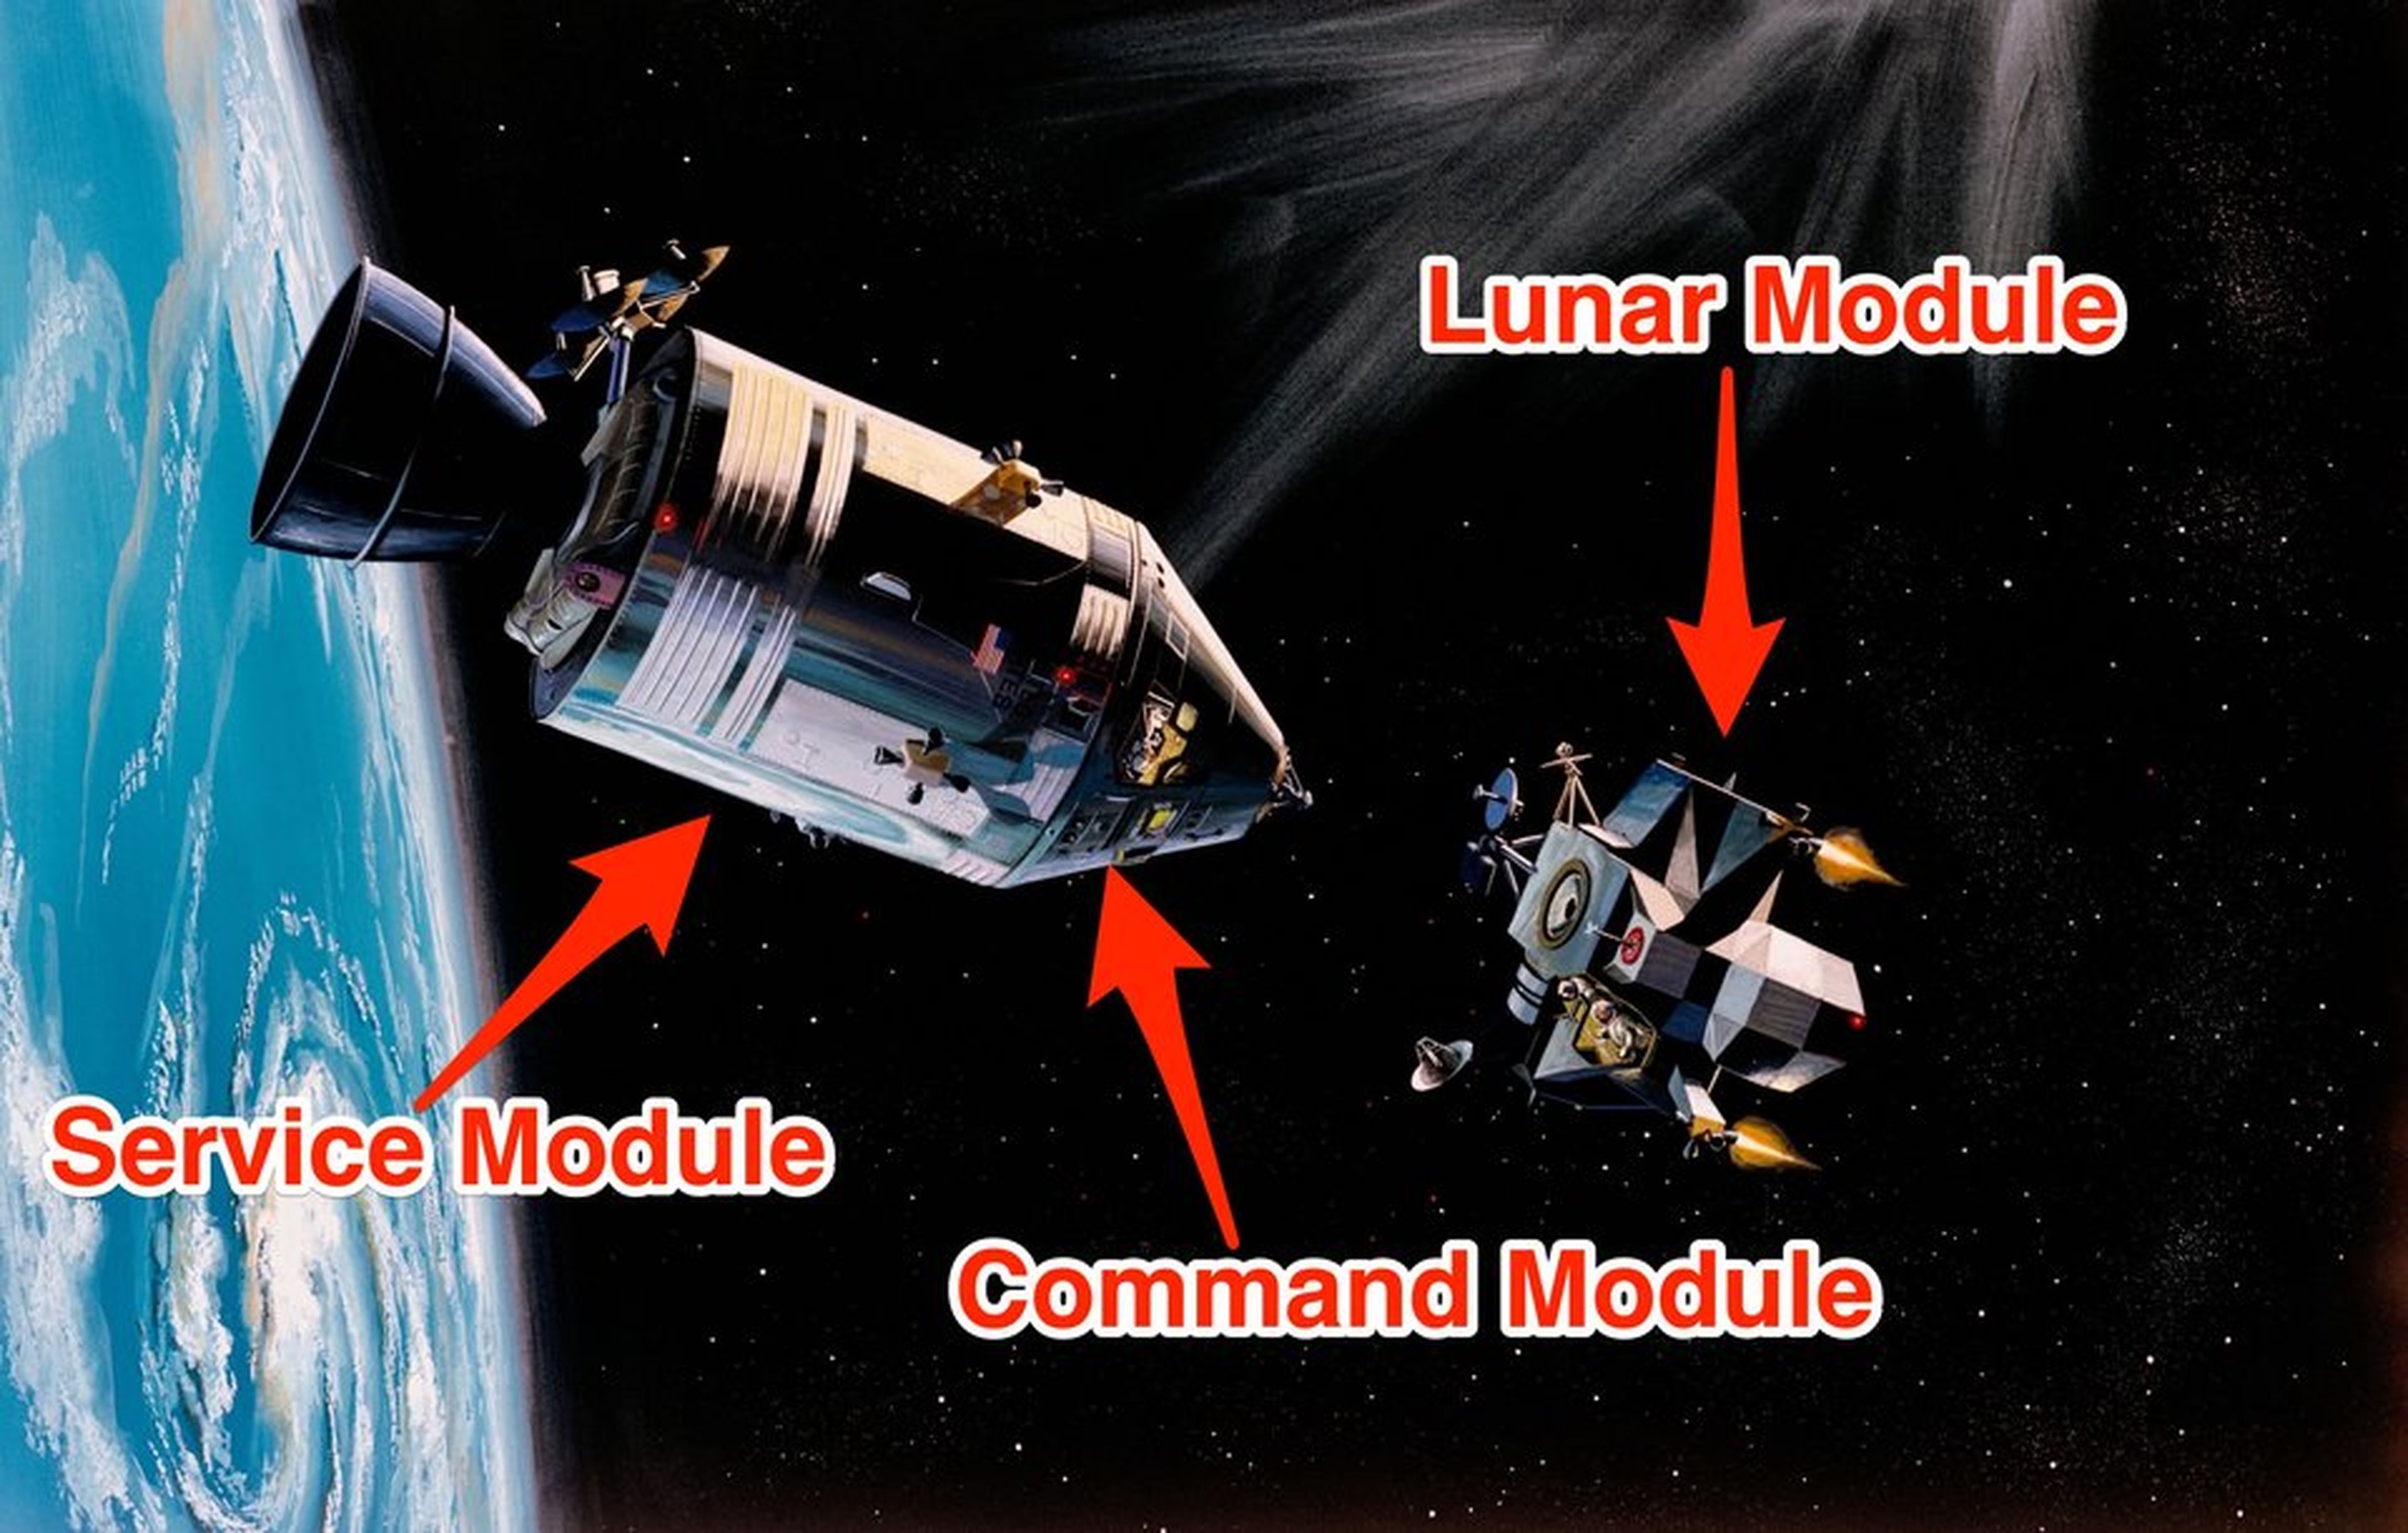 La nave espacial usada durante el programa de alunizaje Apollo 11 se componía de un módulo lunar, un módulo de servicio y un módulo de comando, siento este último el que transportó a los astronautas de vuelta a la Tierra.